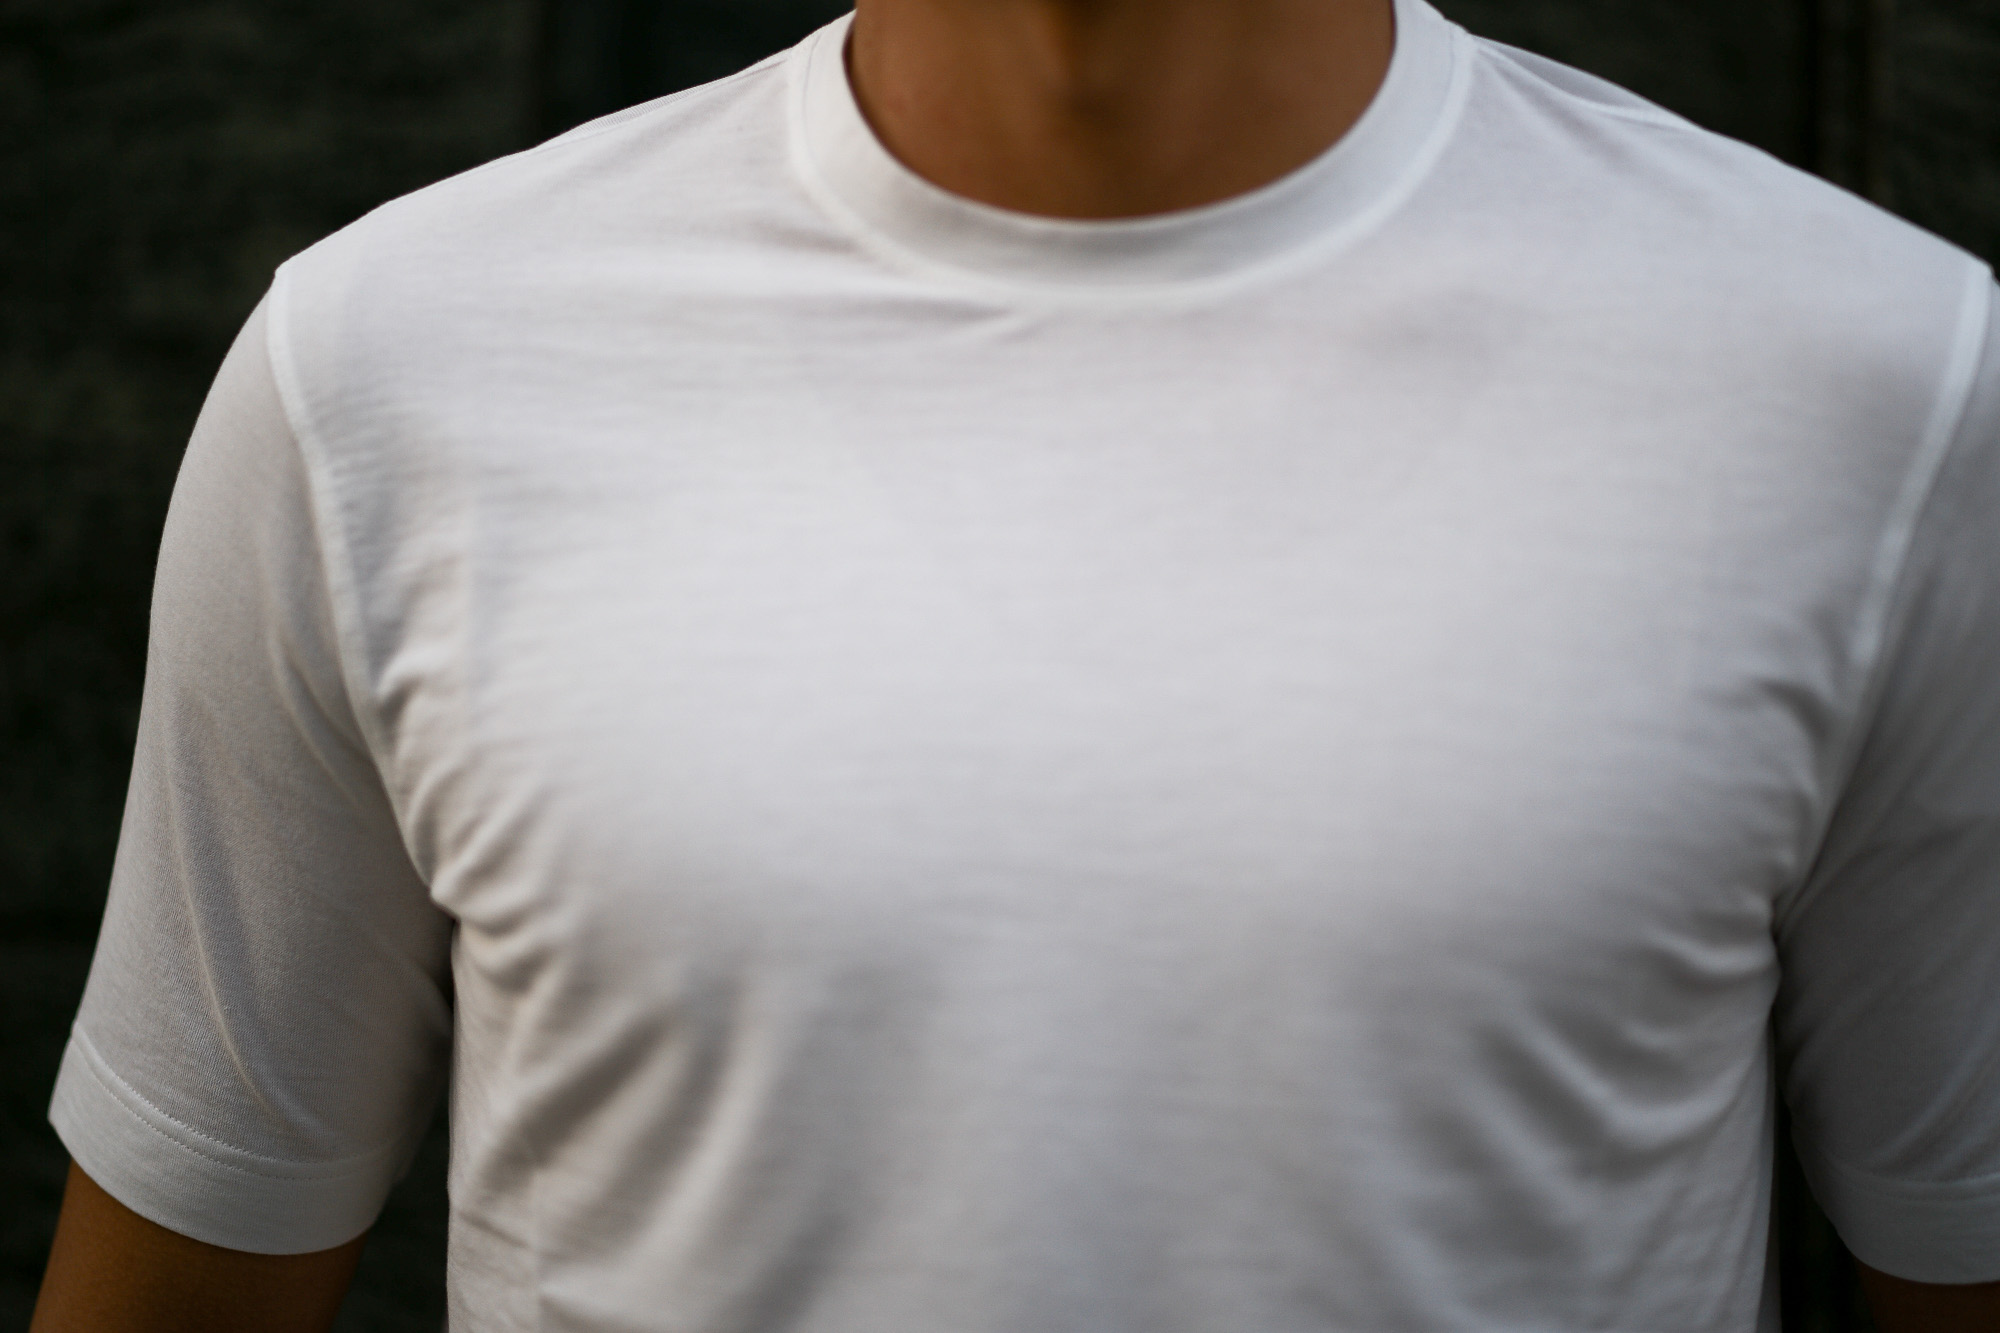 ZANONE(ザノーネ) Crew Neck T-shirt (クルーネックTシャツ) ice cotton アイスコットン Tシャツ WHITE (ホワイト・Z0001) MADE IN ITALY(イタリア製) 2020 春夏 【ご予約受付中】愛知 名古屋 altoediritto アルトエデリット tee 夏Tシャツ